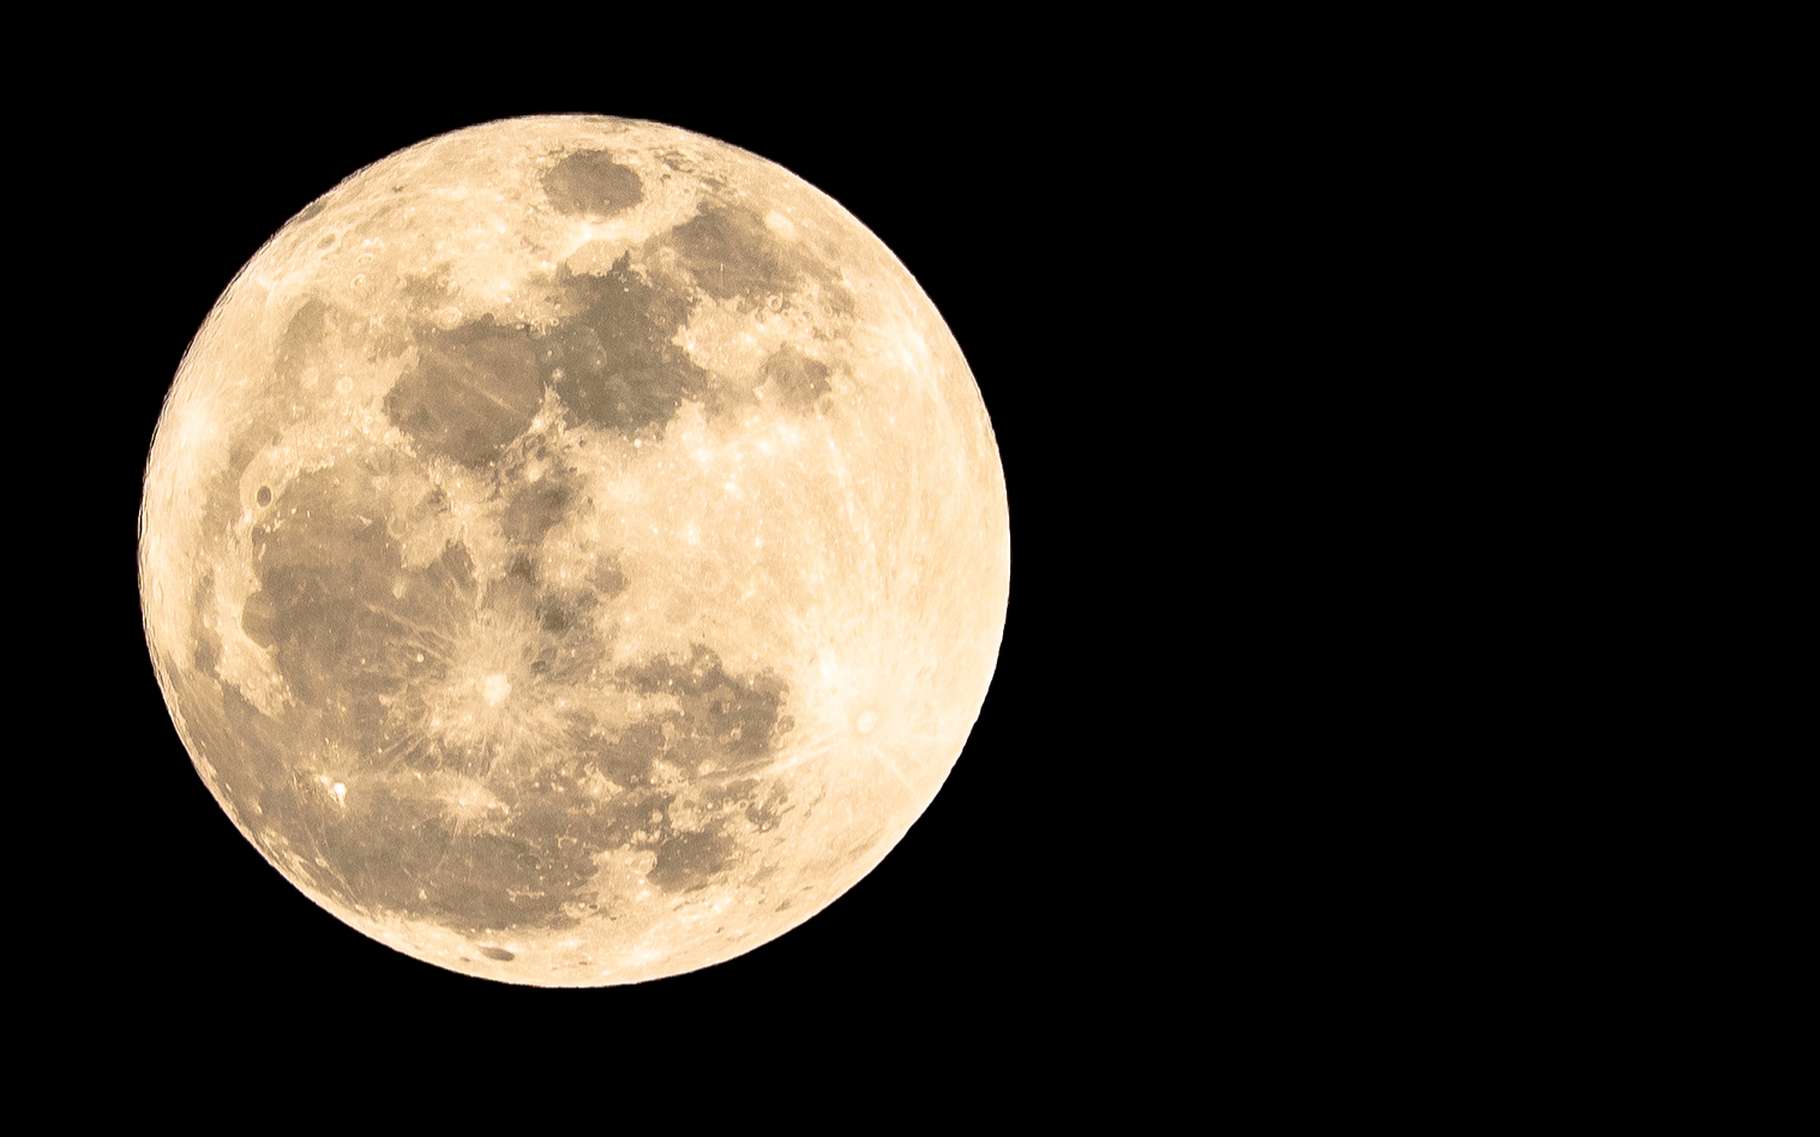 Pourquoi voit-on toujours la même face de la Lune depuis la Terre ? © Aun Photographer, Shutterstock